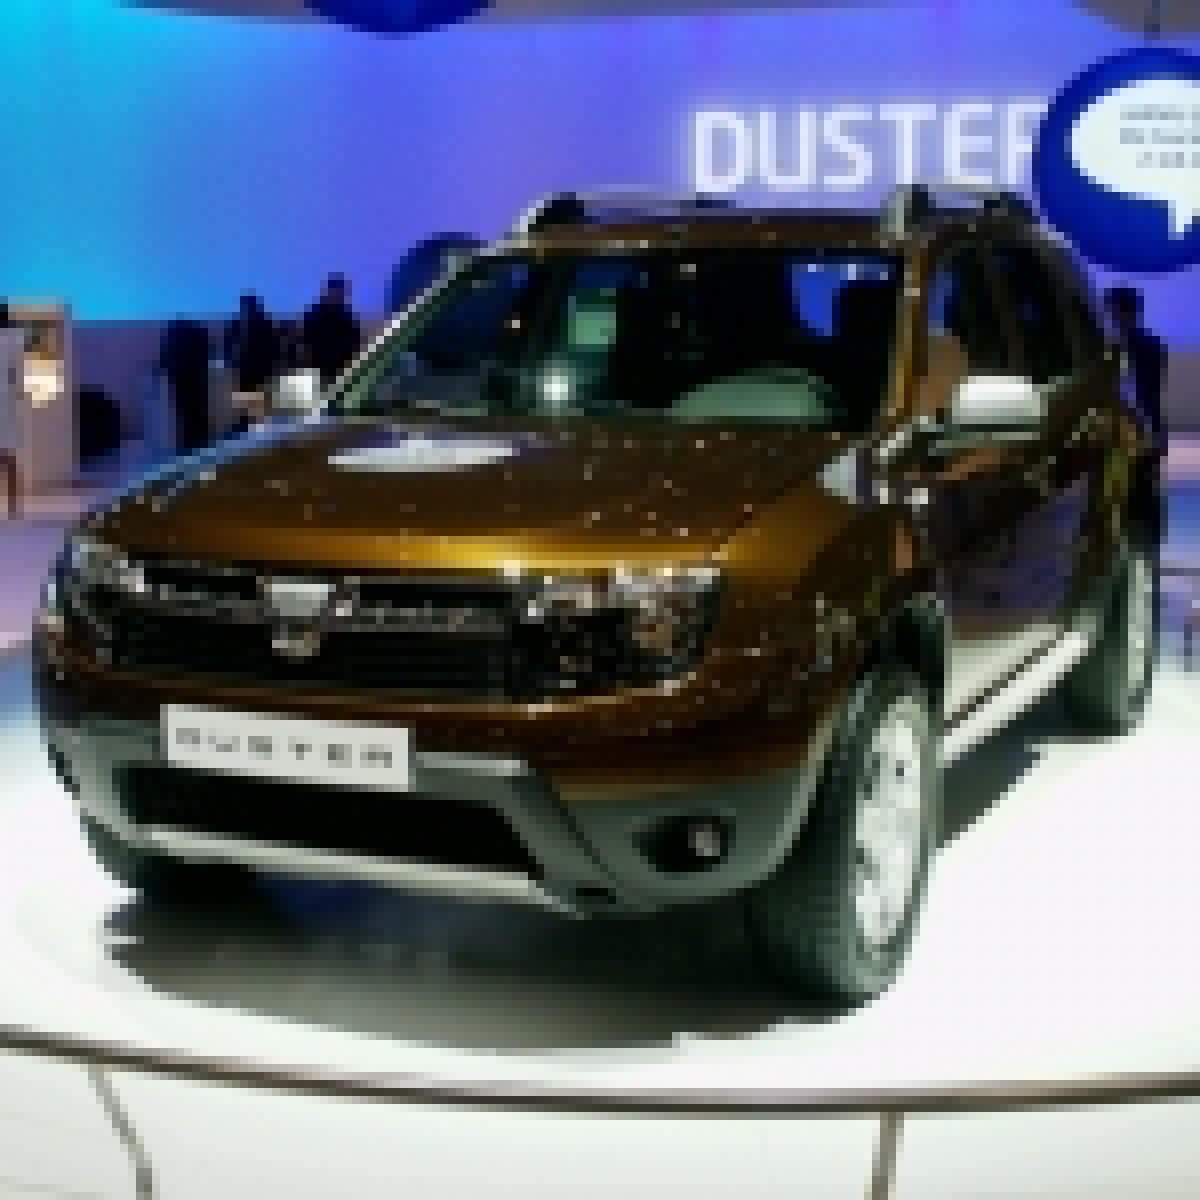 Prima maşină de teren Dacia poate fi comandată începînd de astăzi, la un preţ fără concurenţă » Lovitură sub centură